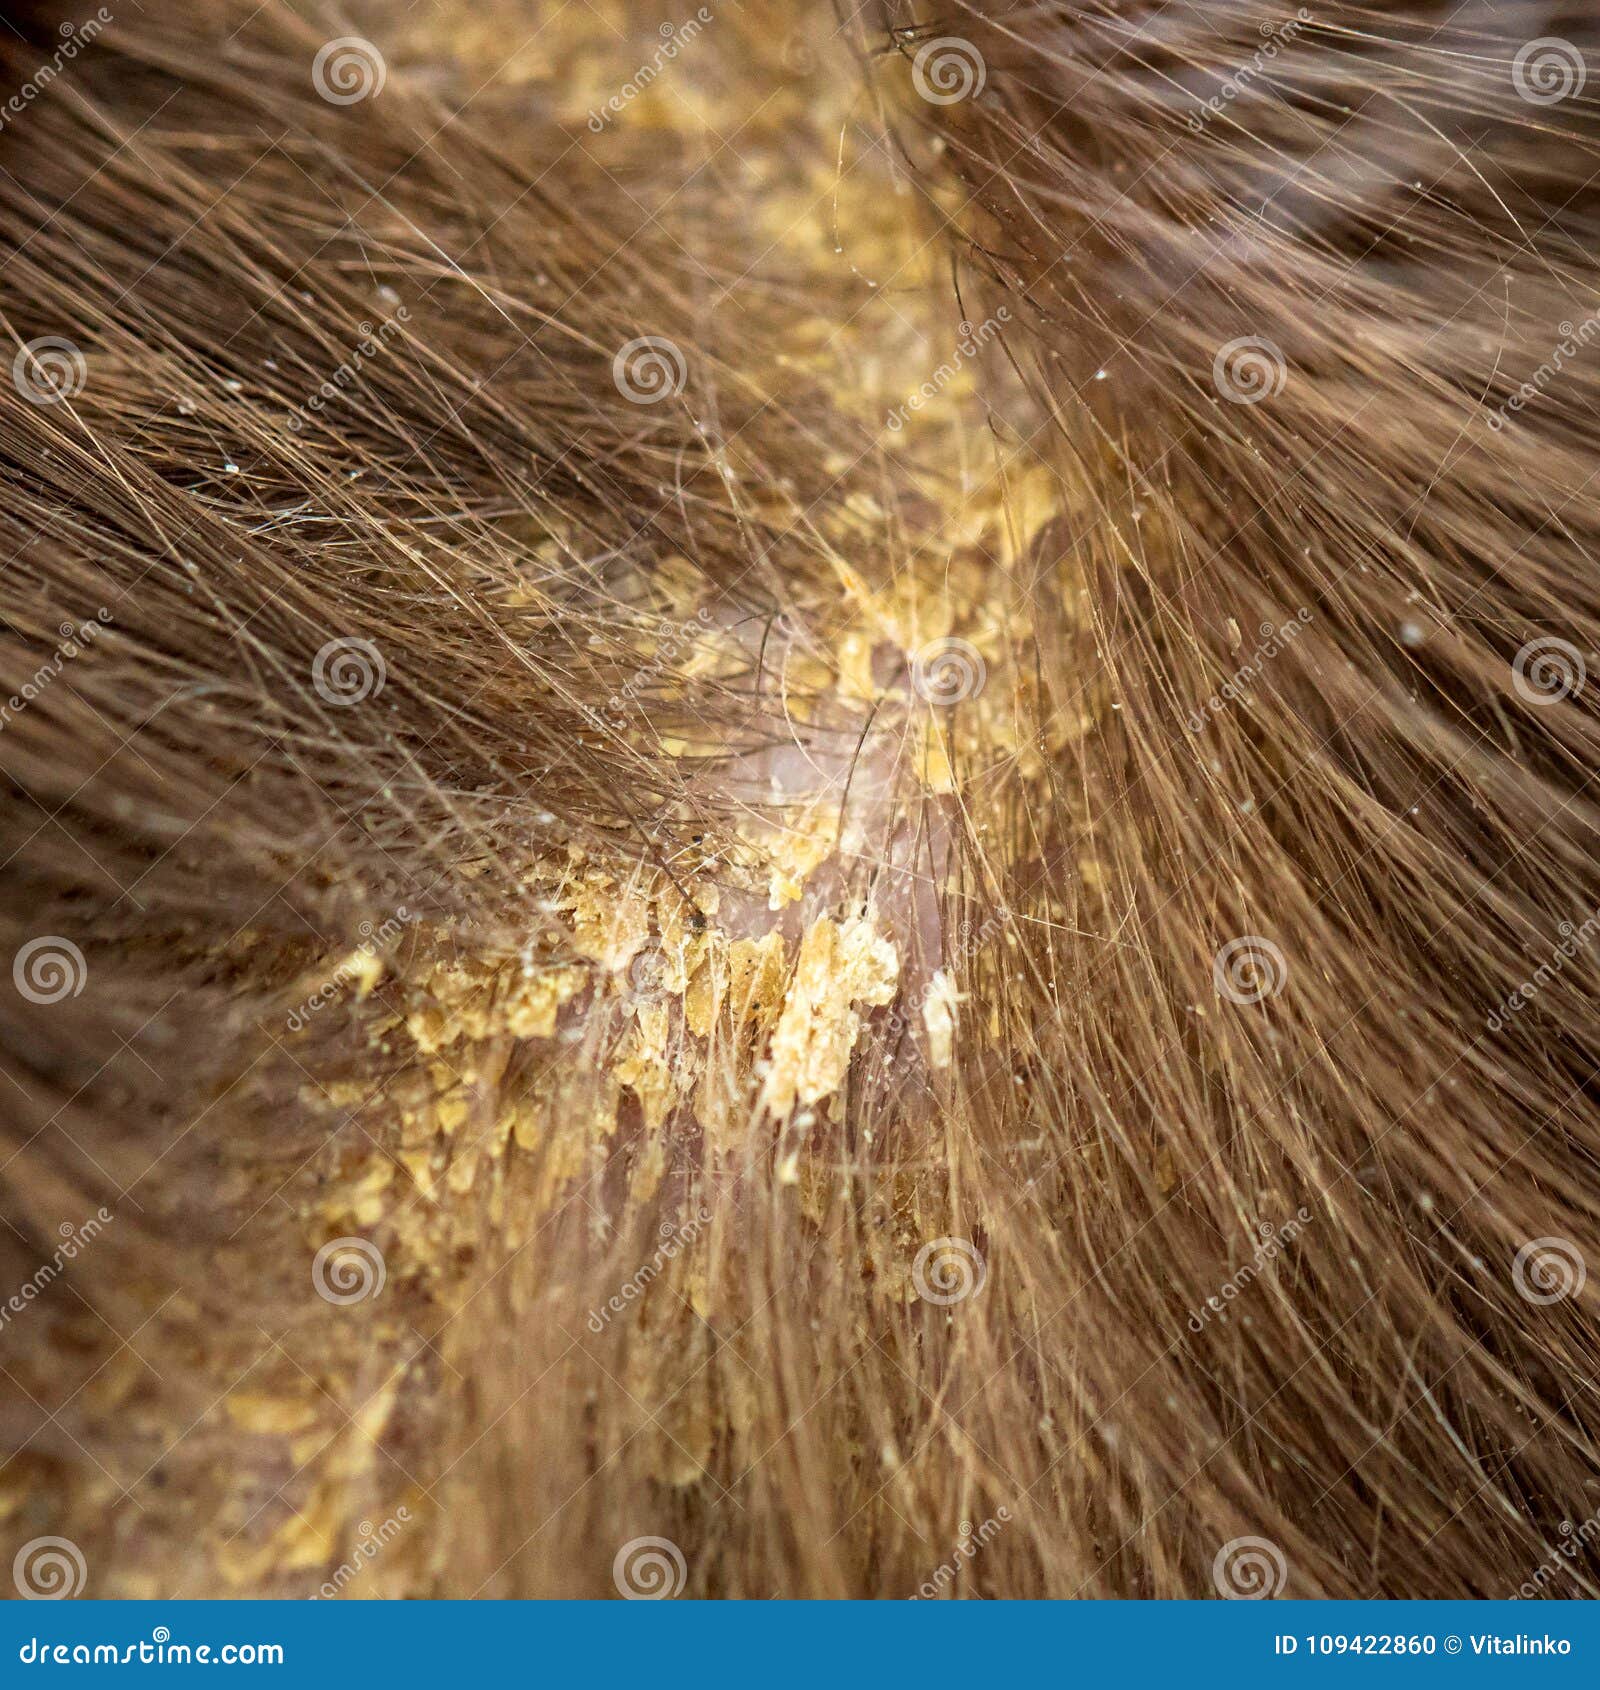 Schuppen Im Haar Flockige Kopfhaut Seborrhea Stockfoto - Bild von pilz,  krankheit: 109422860